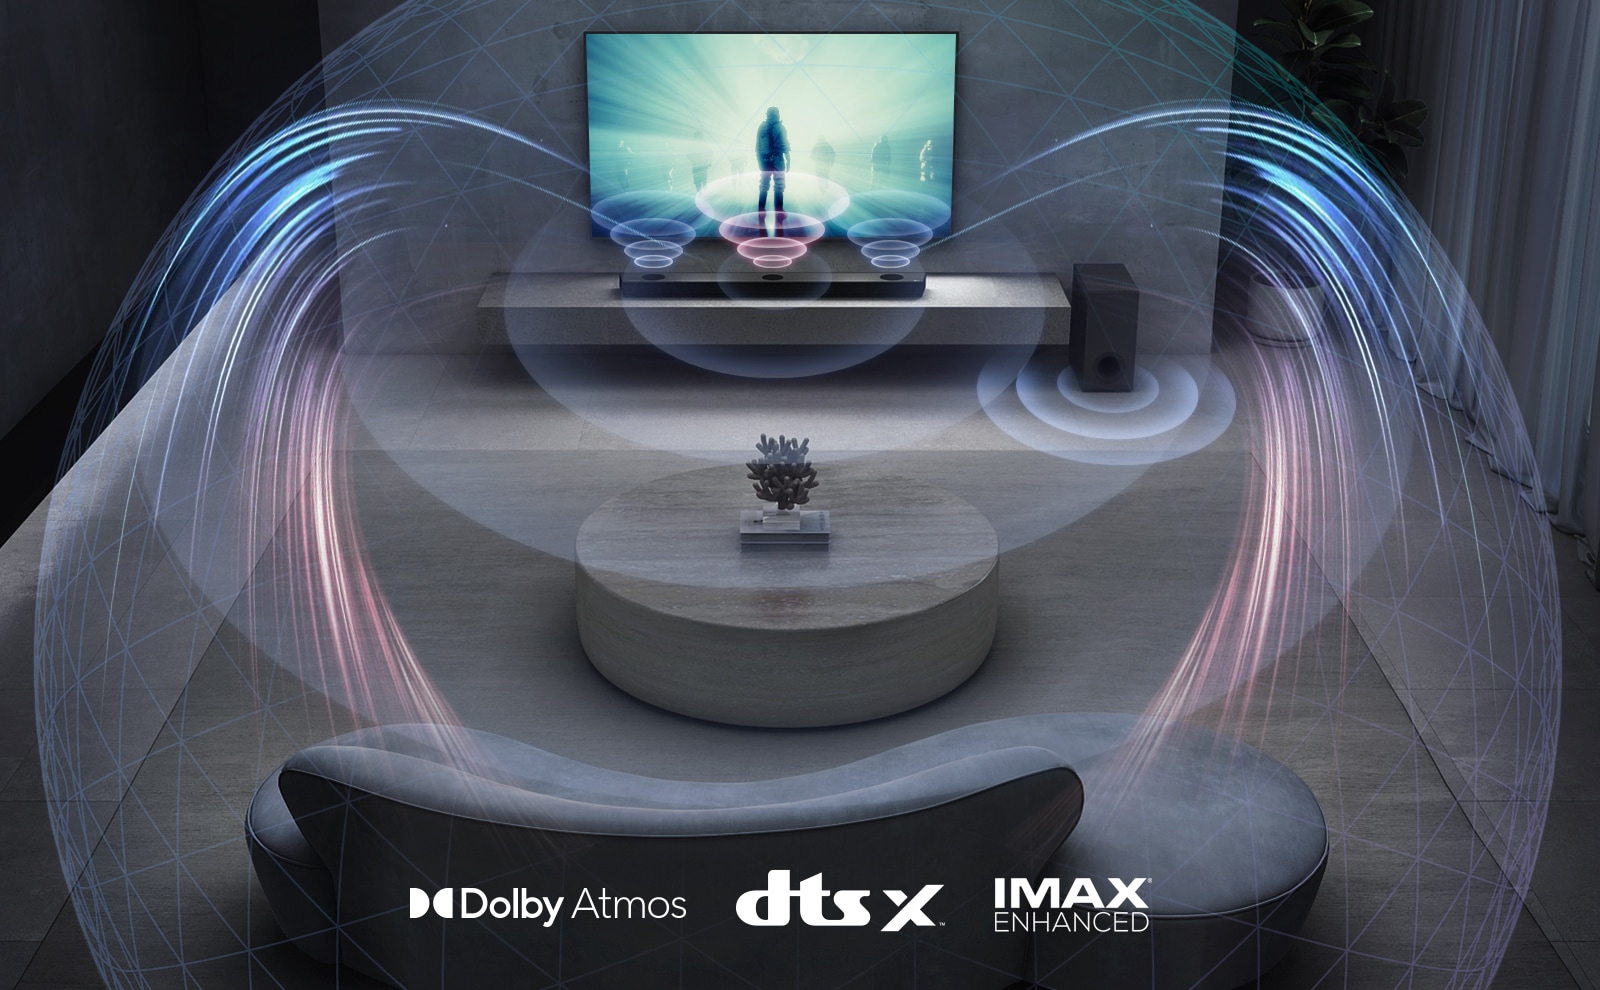 V obývacím pokoji je na stěně televizor LG. Na televizní obrazovce běží film. Sound Bar LG je hned pod televizorem na šedé polici a hned vedle je subwoofer. Sada 2 zadních reproduktorů je v zadní části obývacího pokoje. Z každého reproduktoru vychází grafika zvukového efektu. Loga Dolby Atmos a DTS:X, IMAX Enhanced jsou zobrazena uprostřed dolní části obrazu.